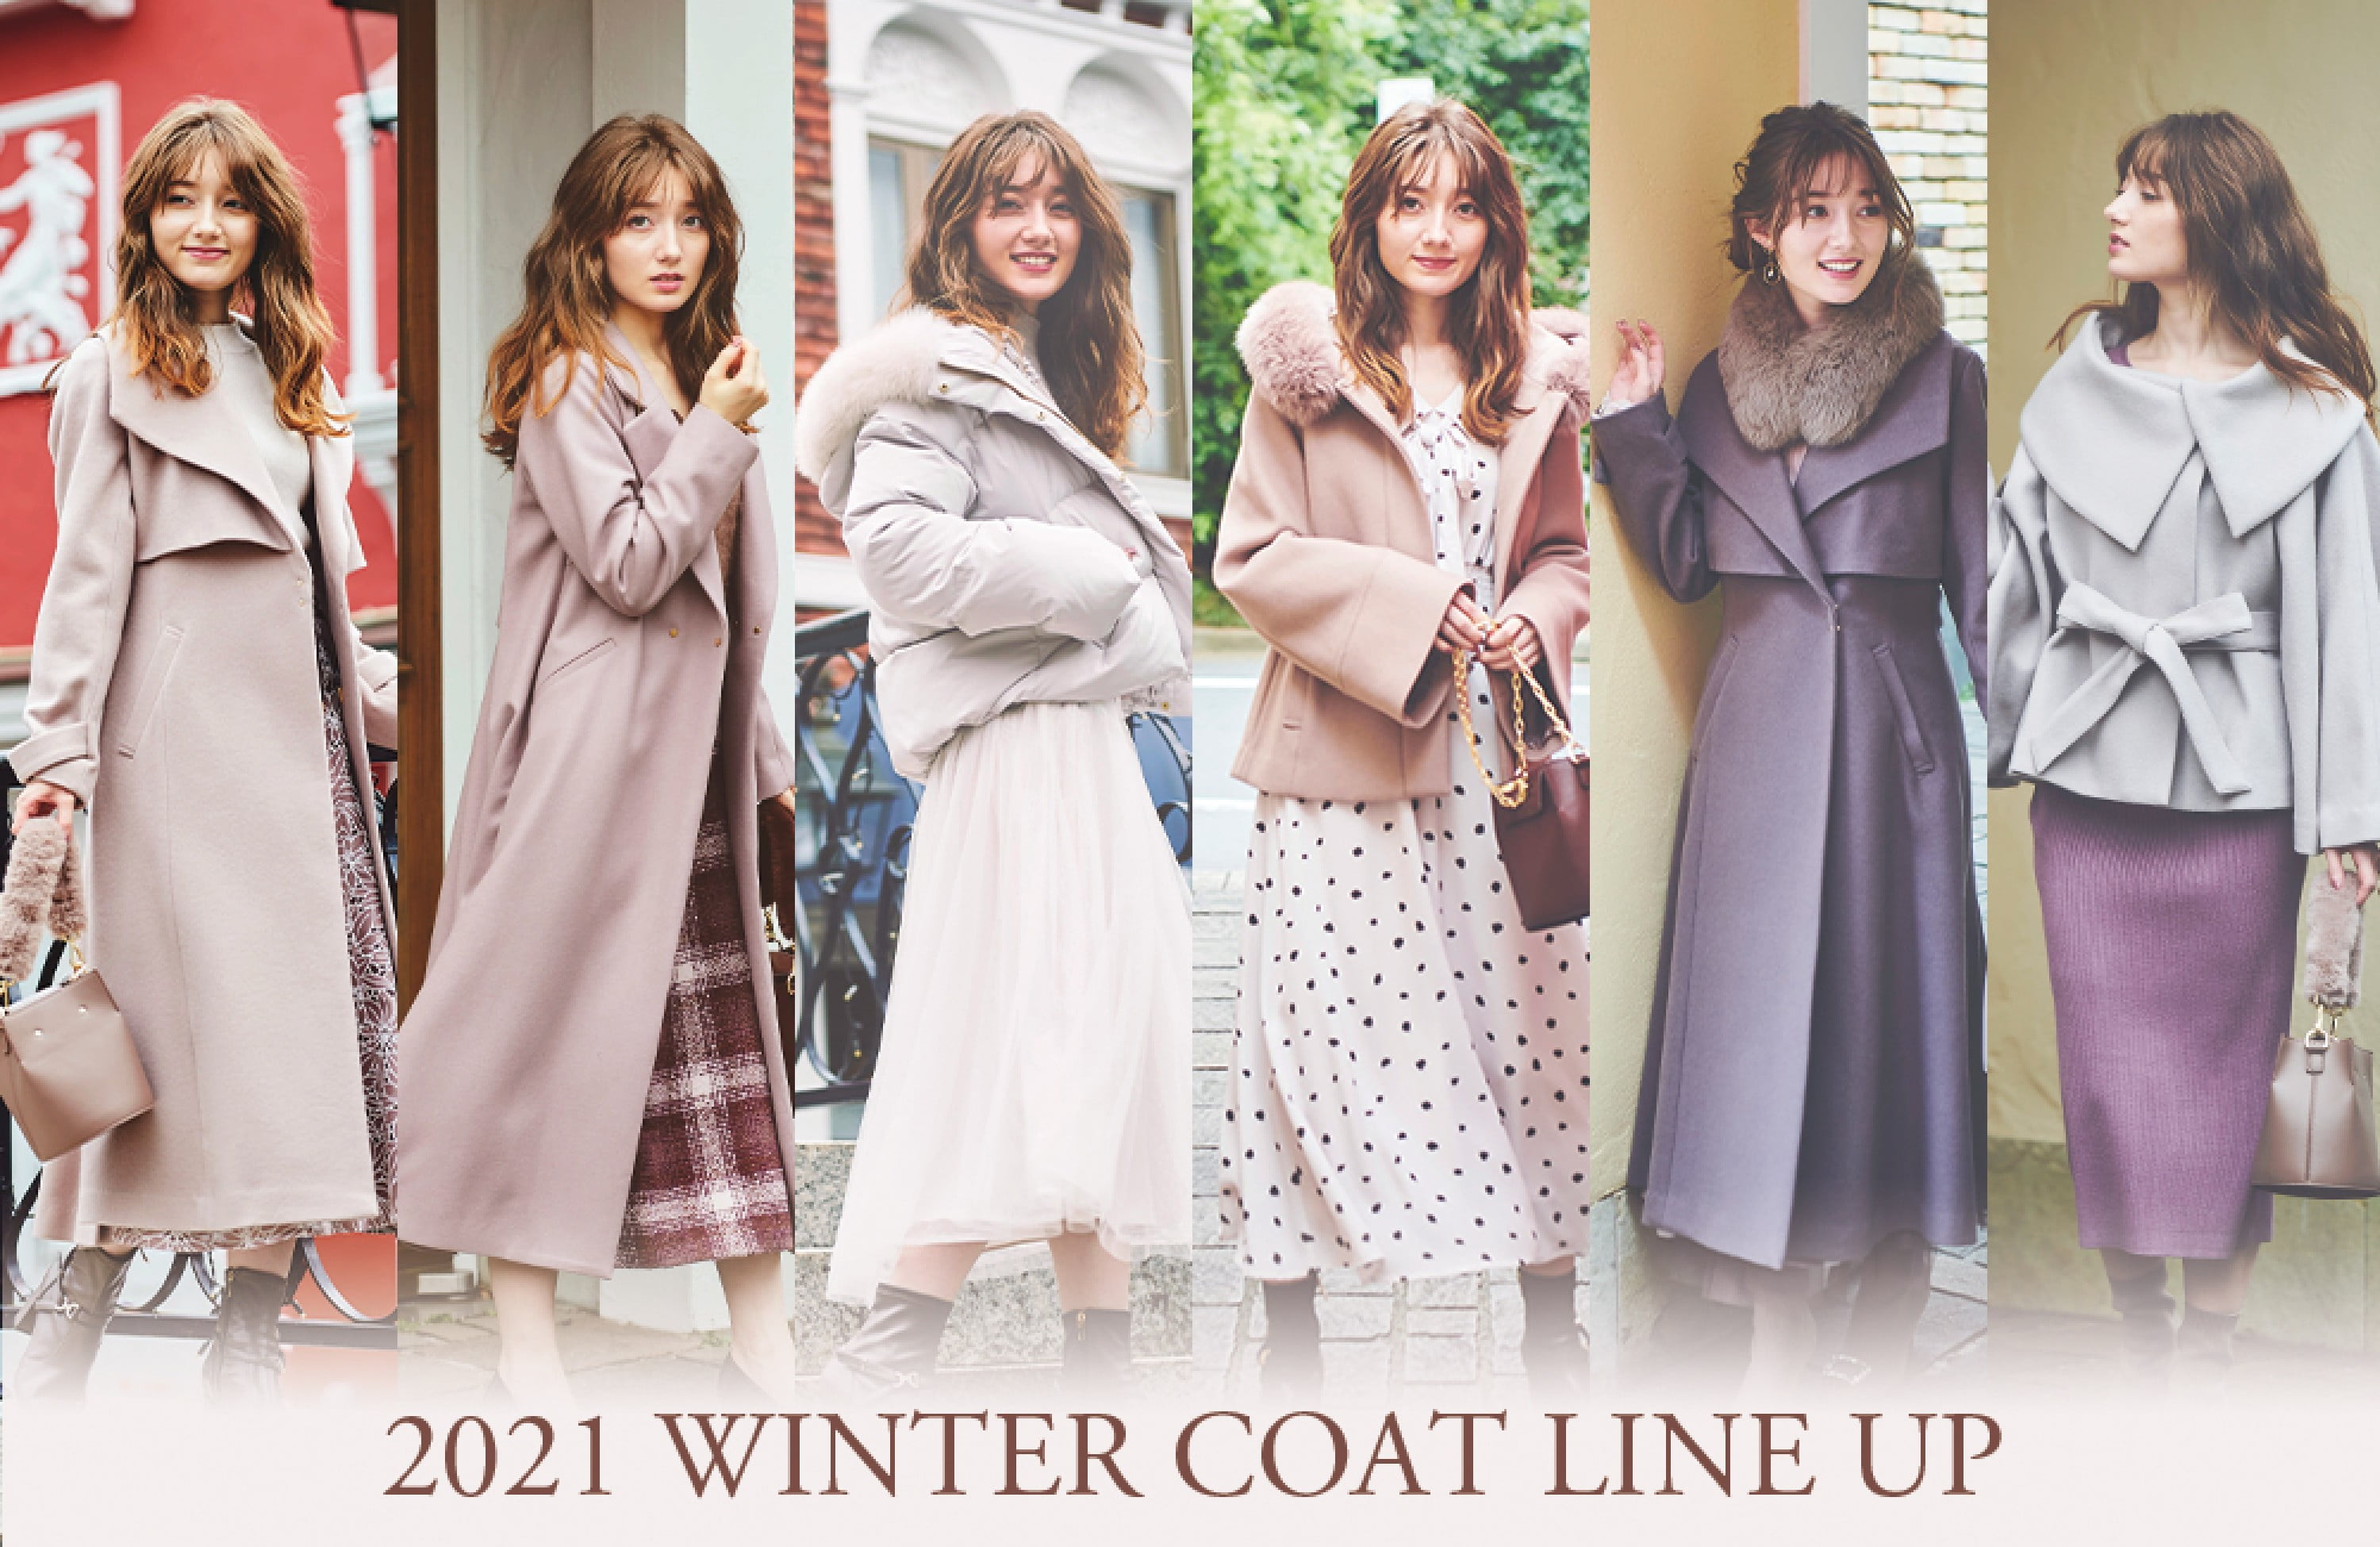 2021 Winter coat line up